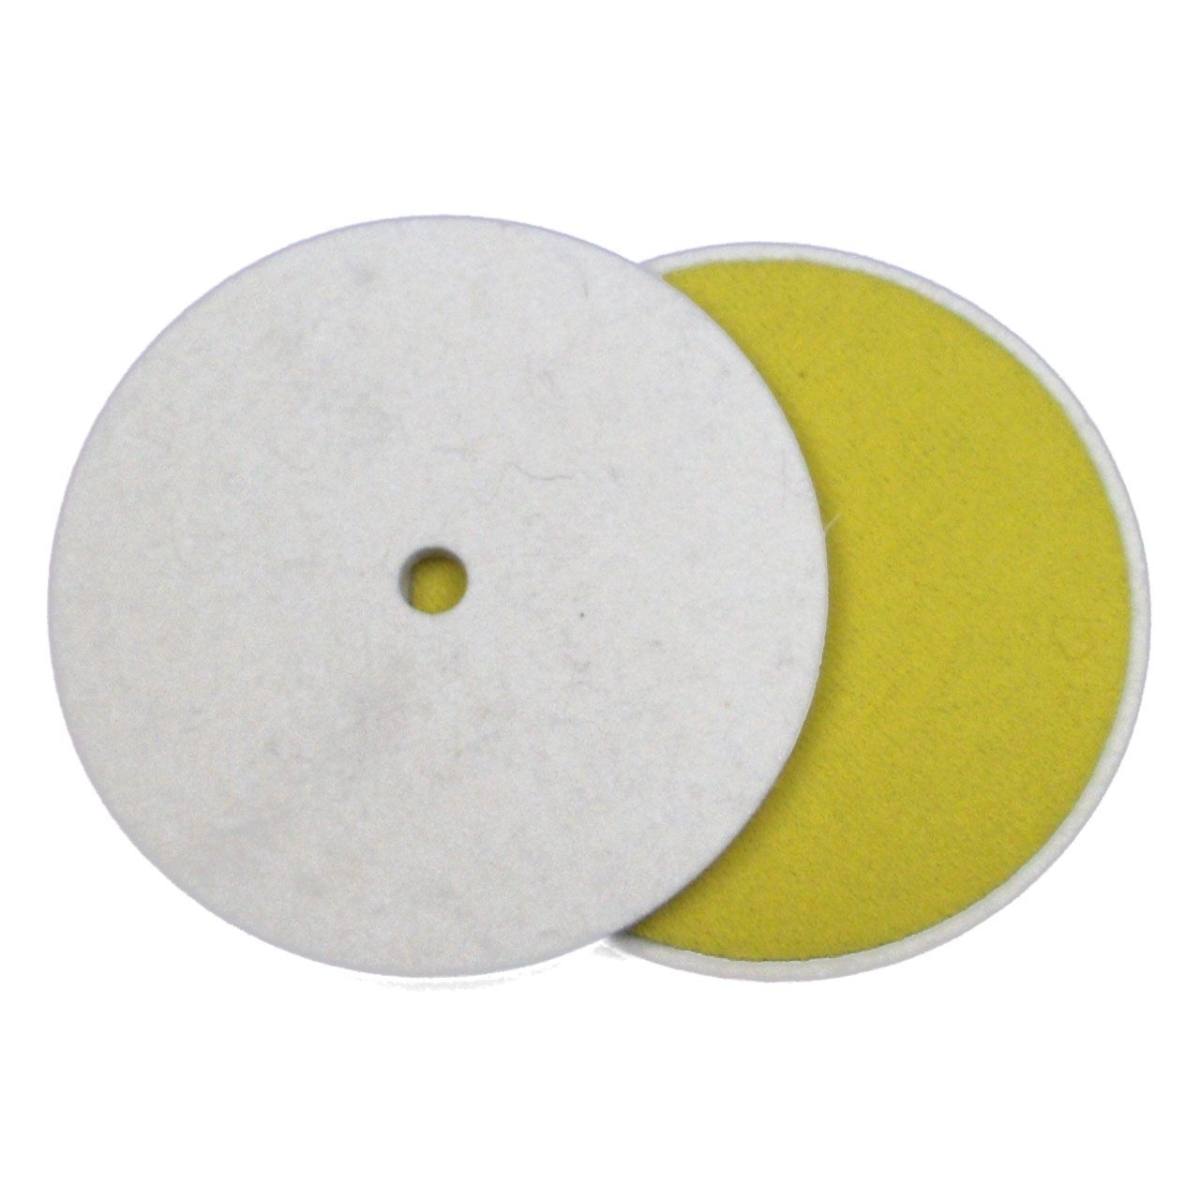 FIX KLETT felt disk, 100 mm x 10 mm, Merino, Velcro